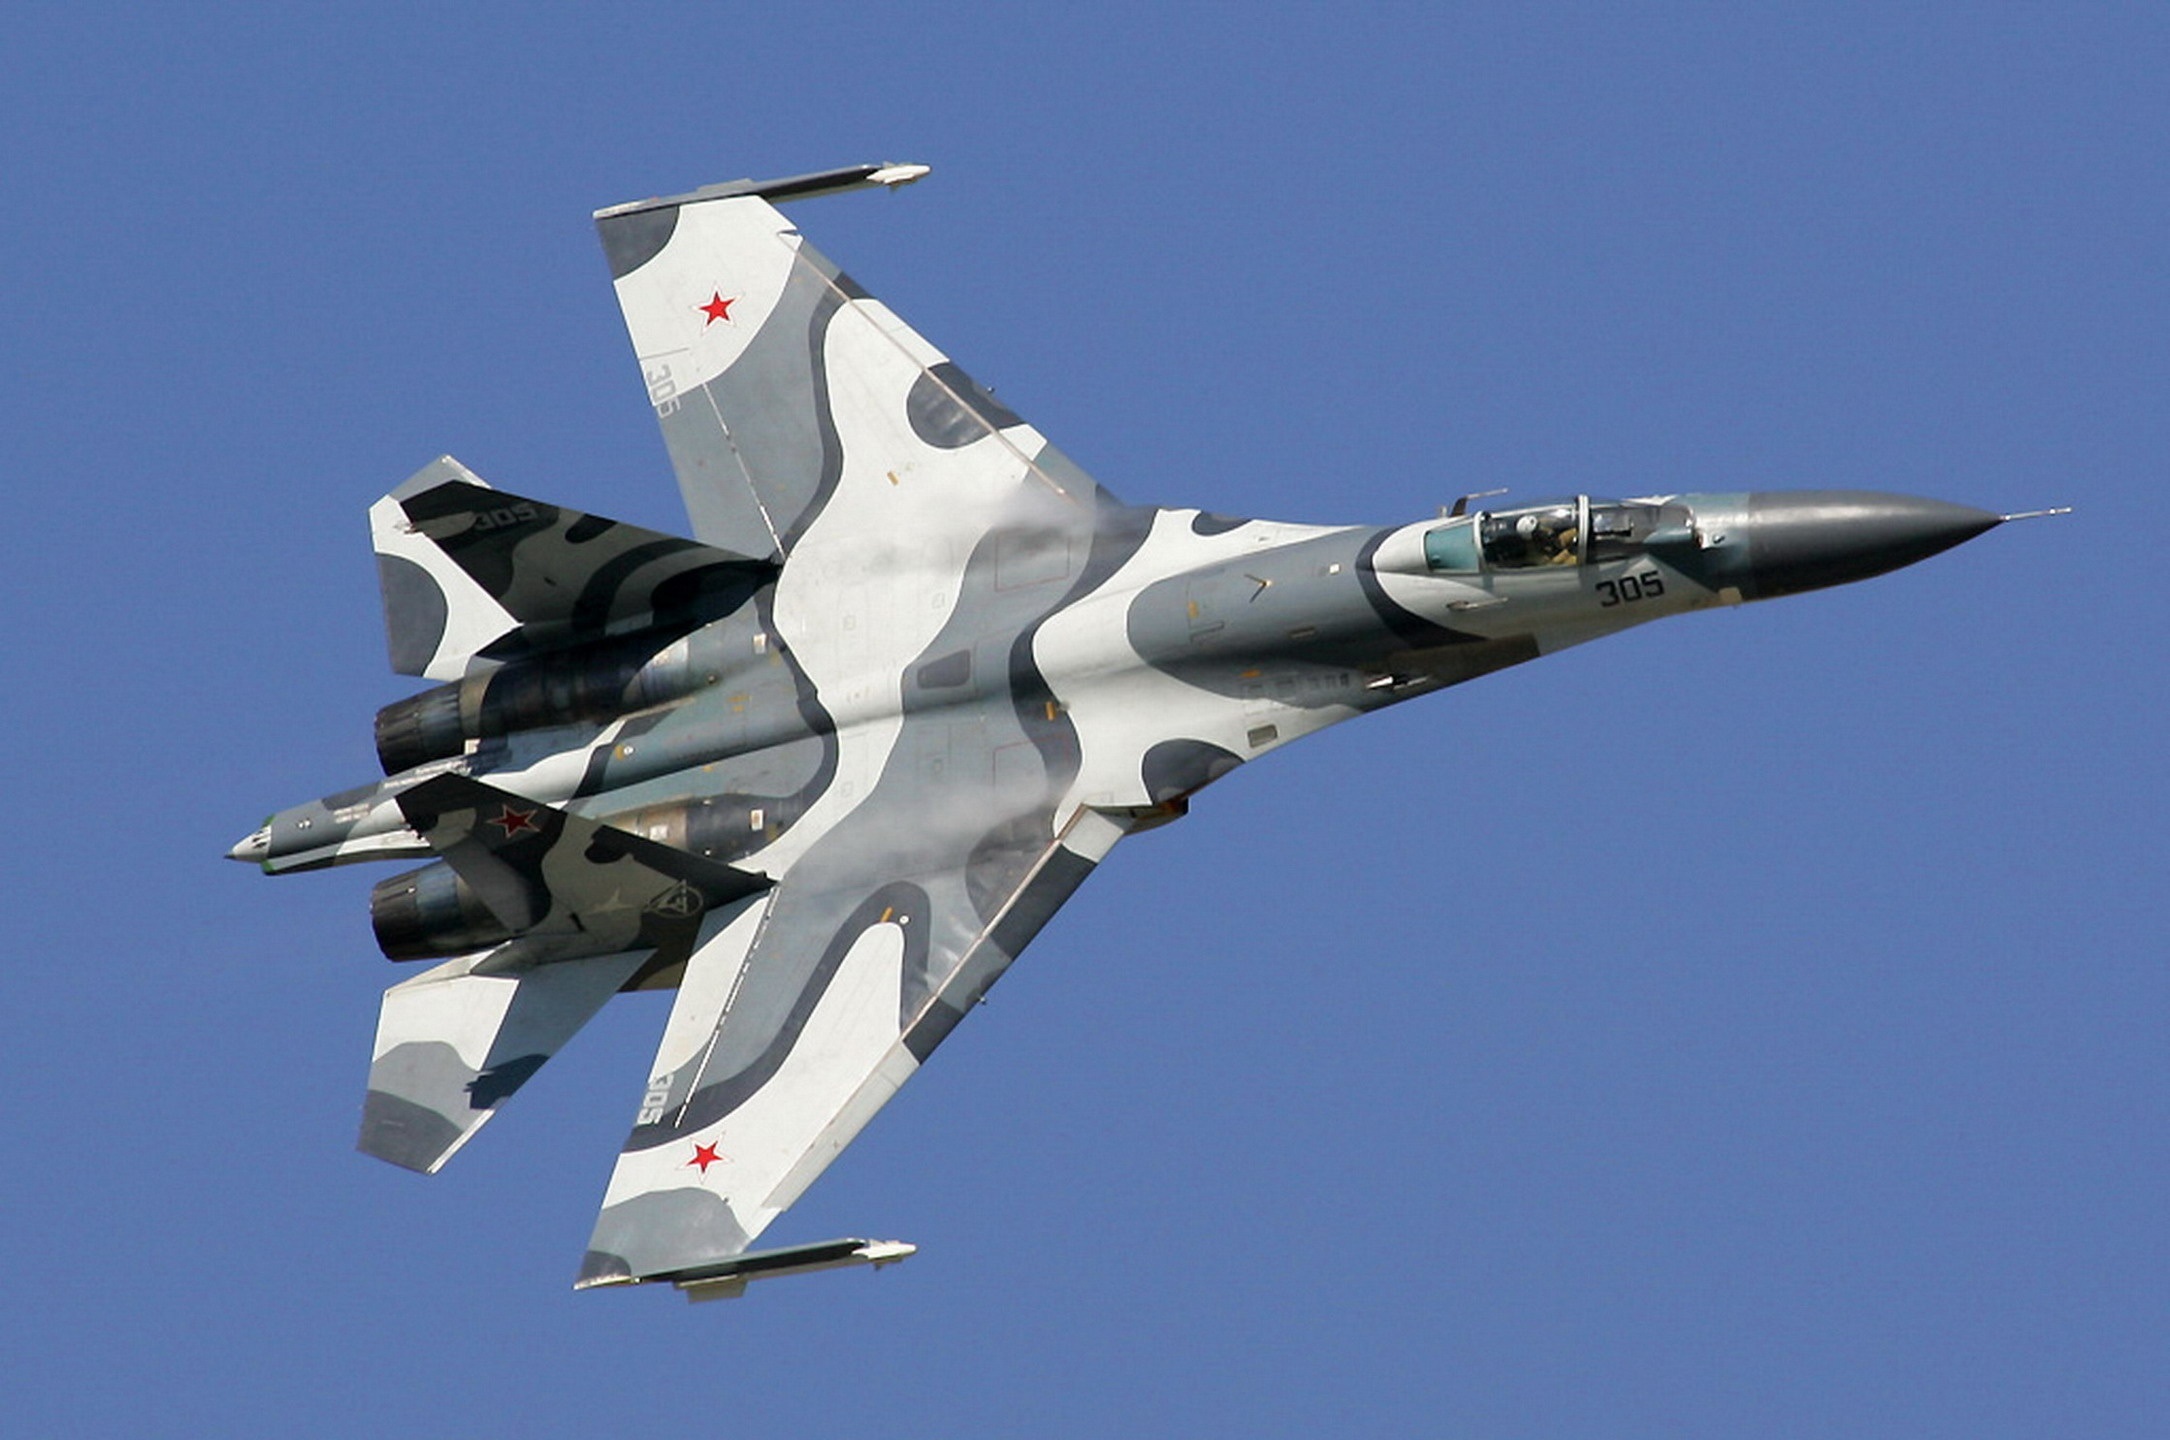 Μαύρη Θάλασσα: Ρωσικά μαχητικά Su-27 αναχαίτισαν βρετανικά αεροσκάφη (βίντεο)